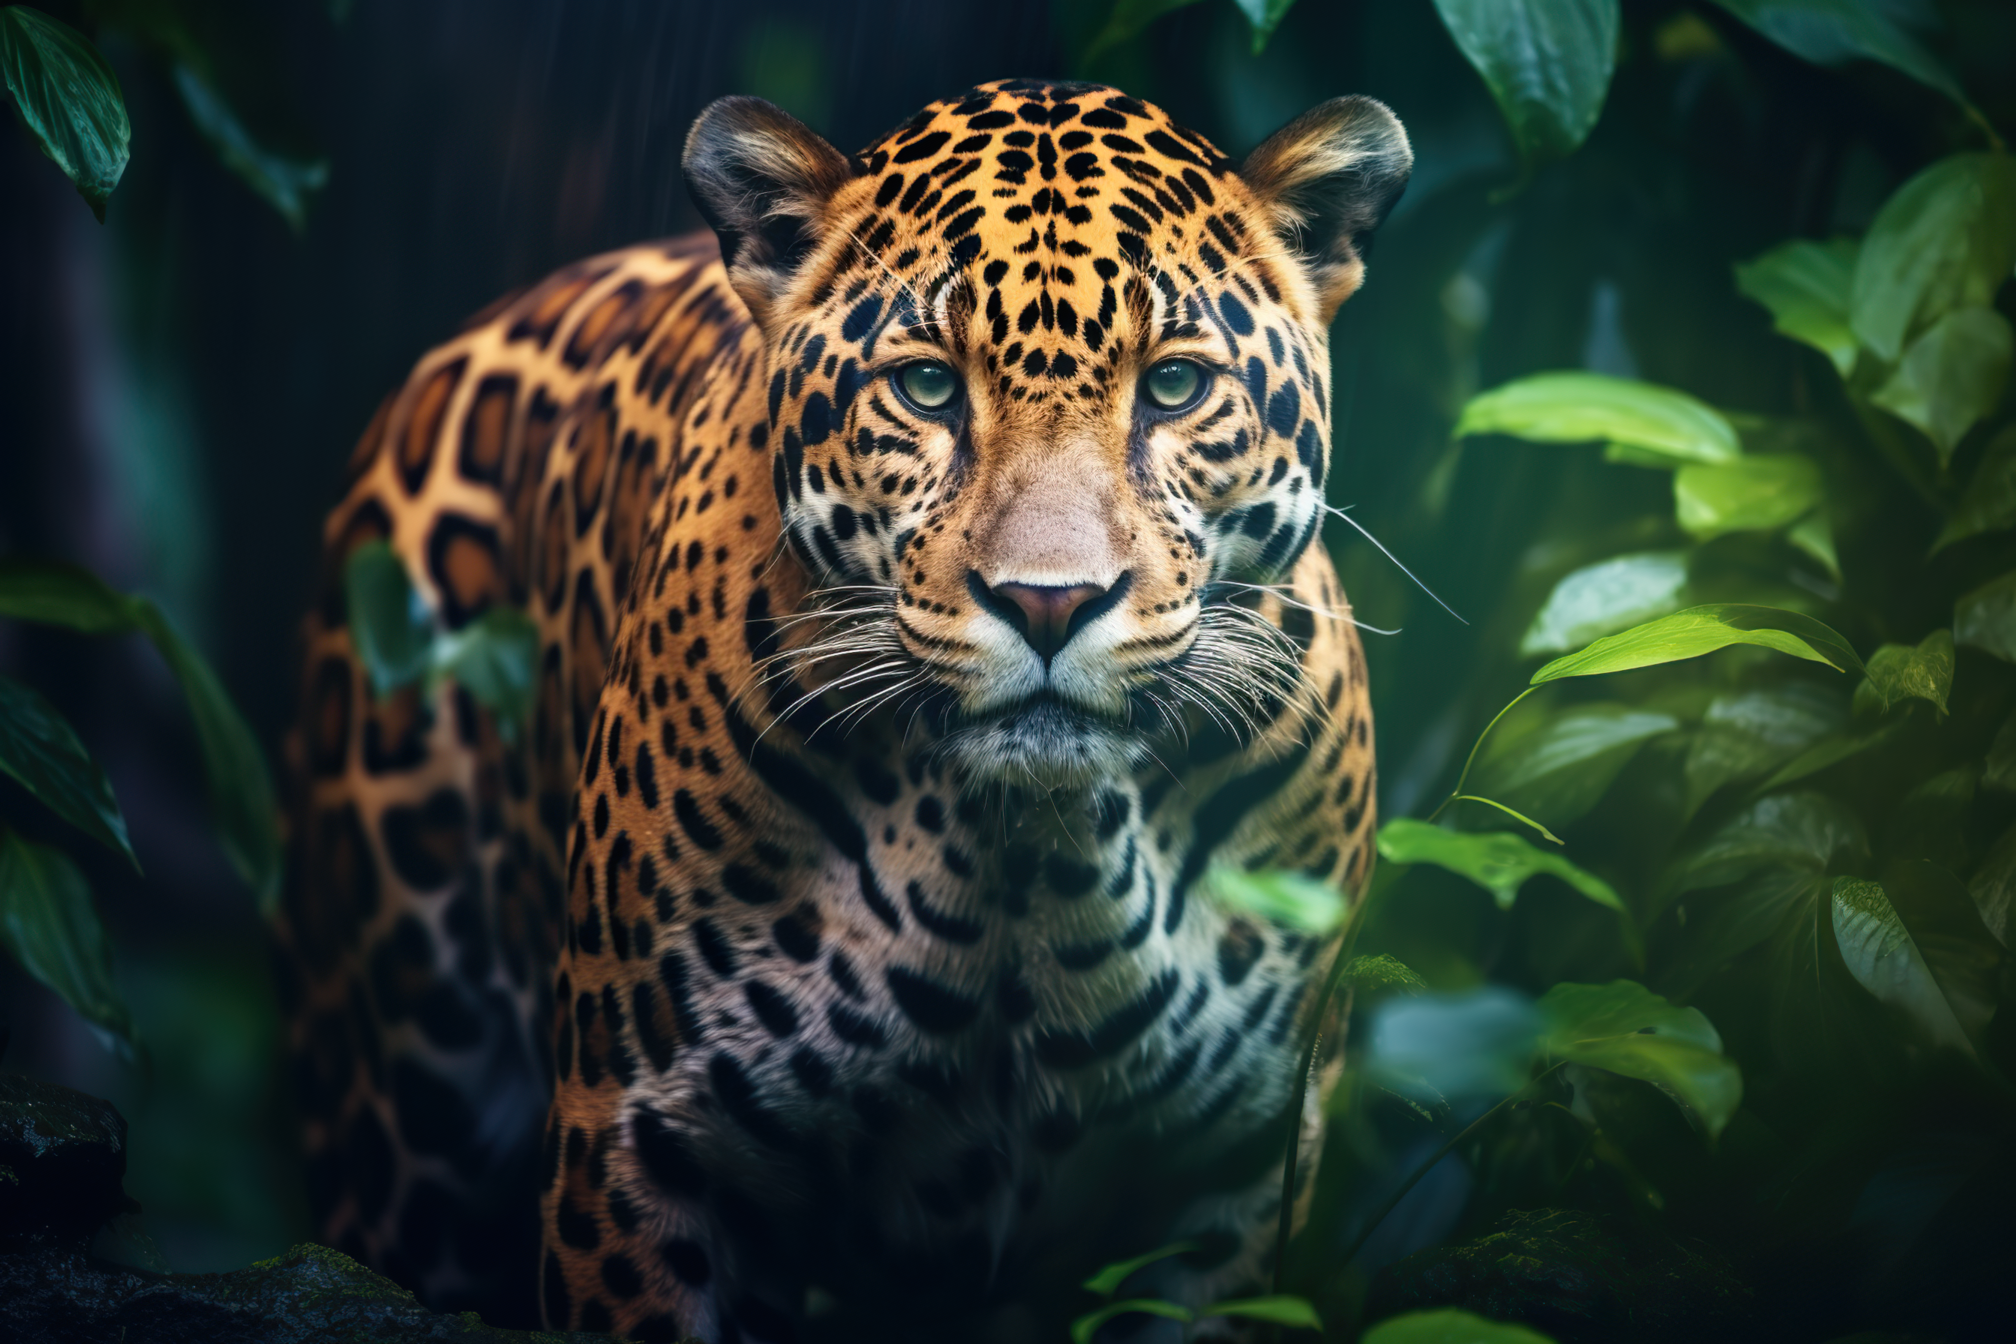 Jaguar roaming in its natural habitat